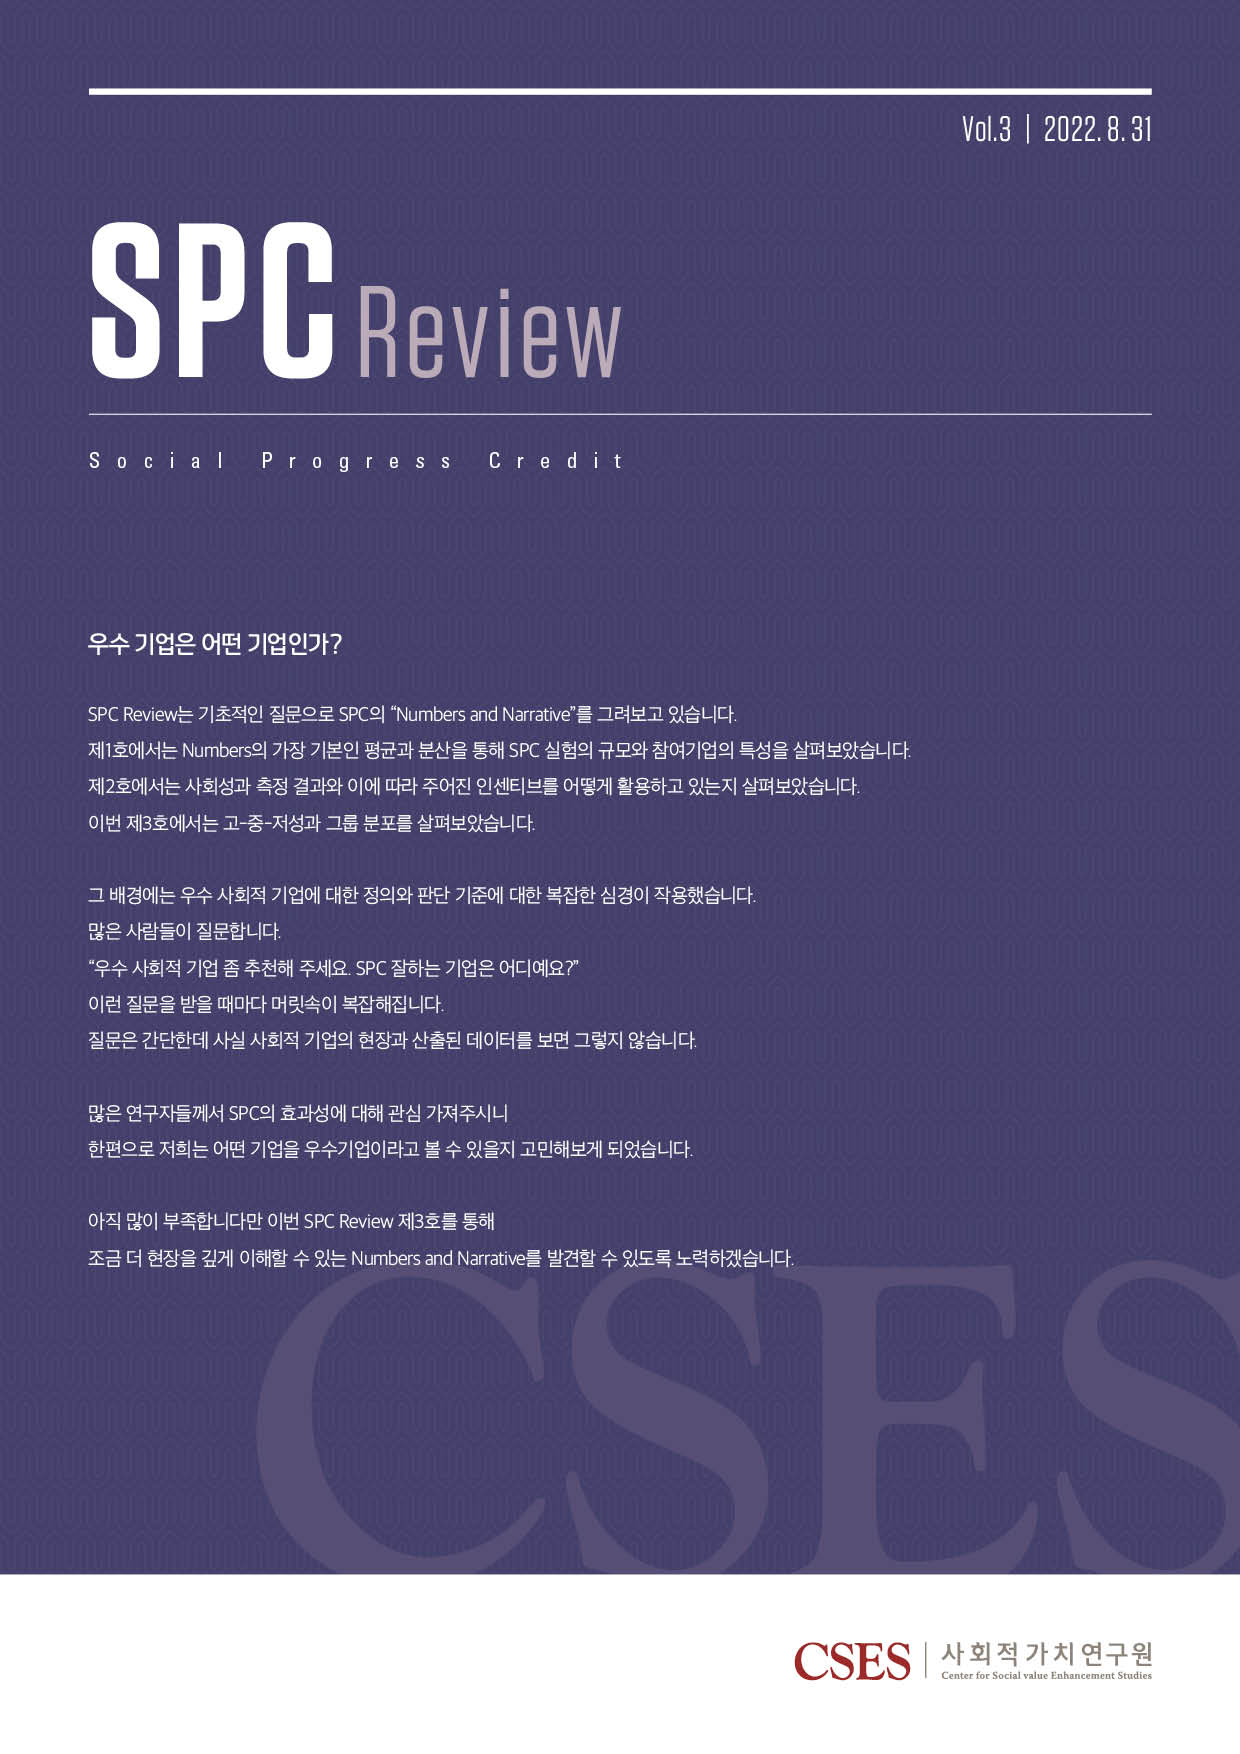 SPC Review Vol. 3